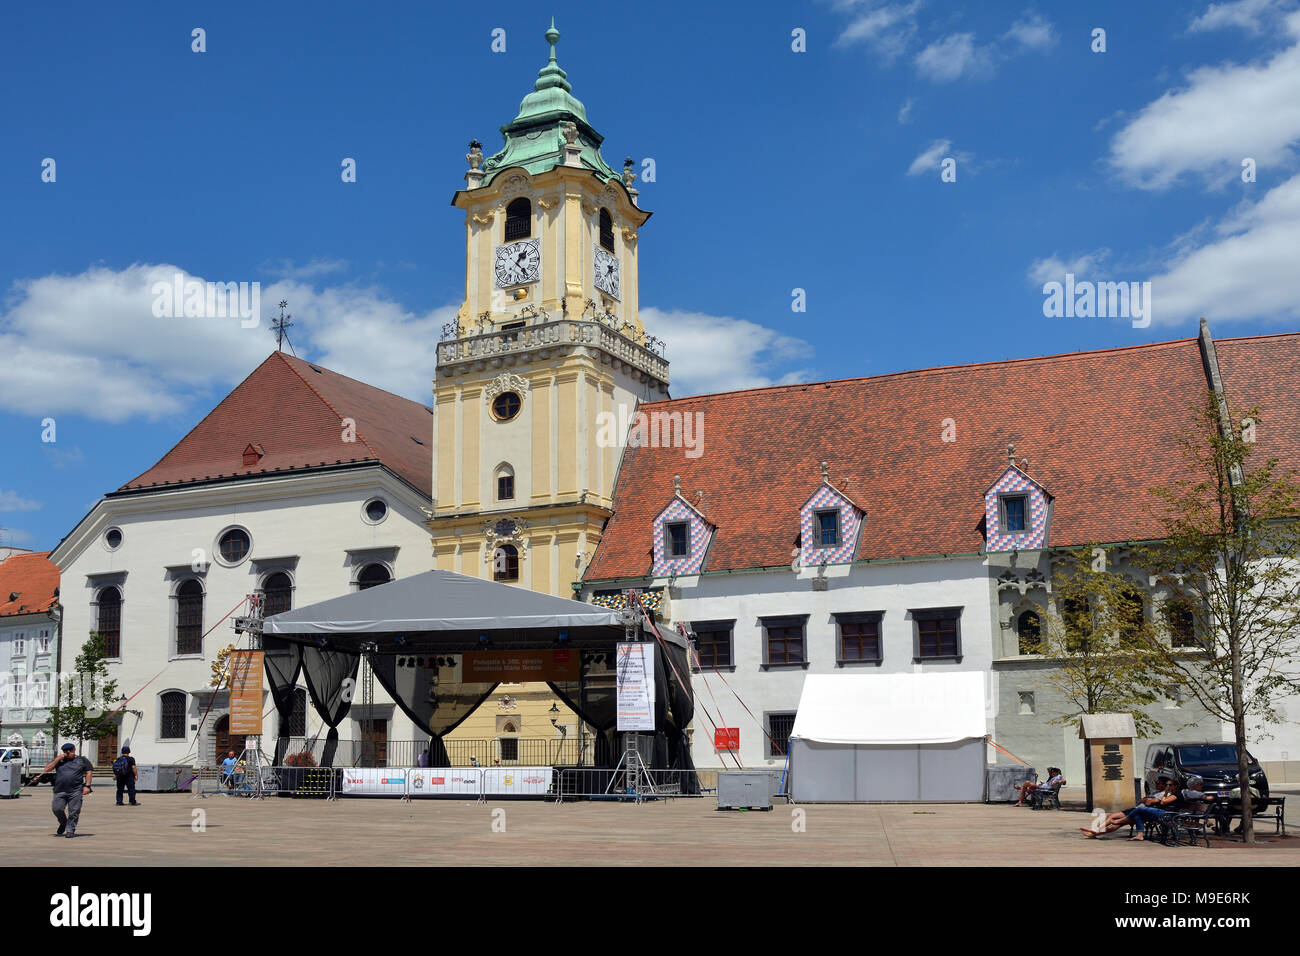 Bratislava, Slovaquie - 14 juin 2017 : l'Ancien hôtel de ville avec musée municipal sur la place principale de la capitale slovaque Bratislava - Slovaquie. Banque D'Images